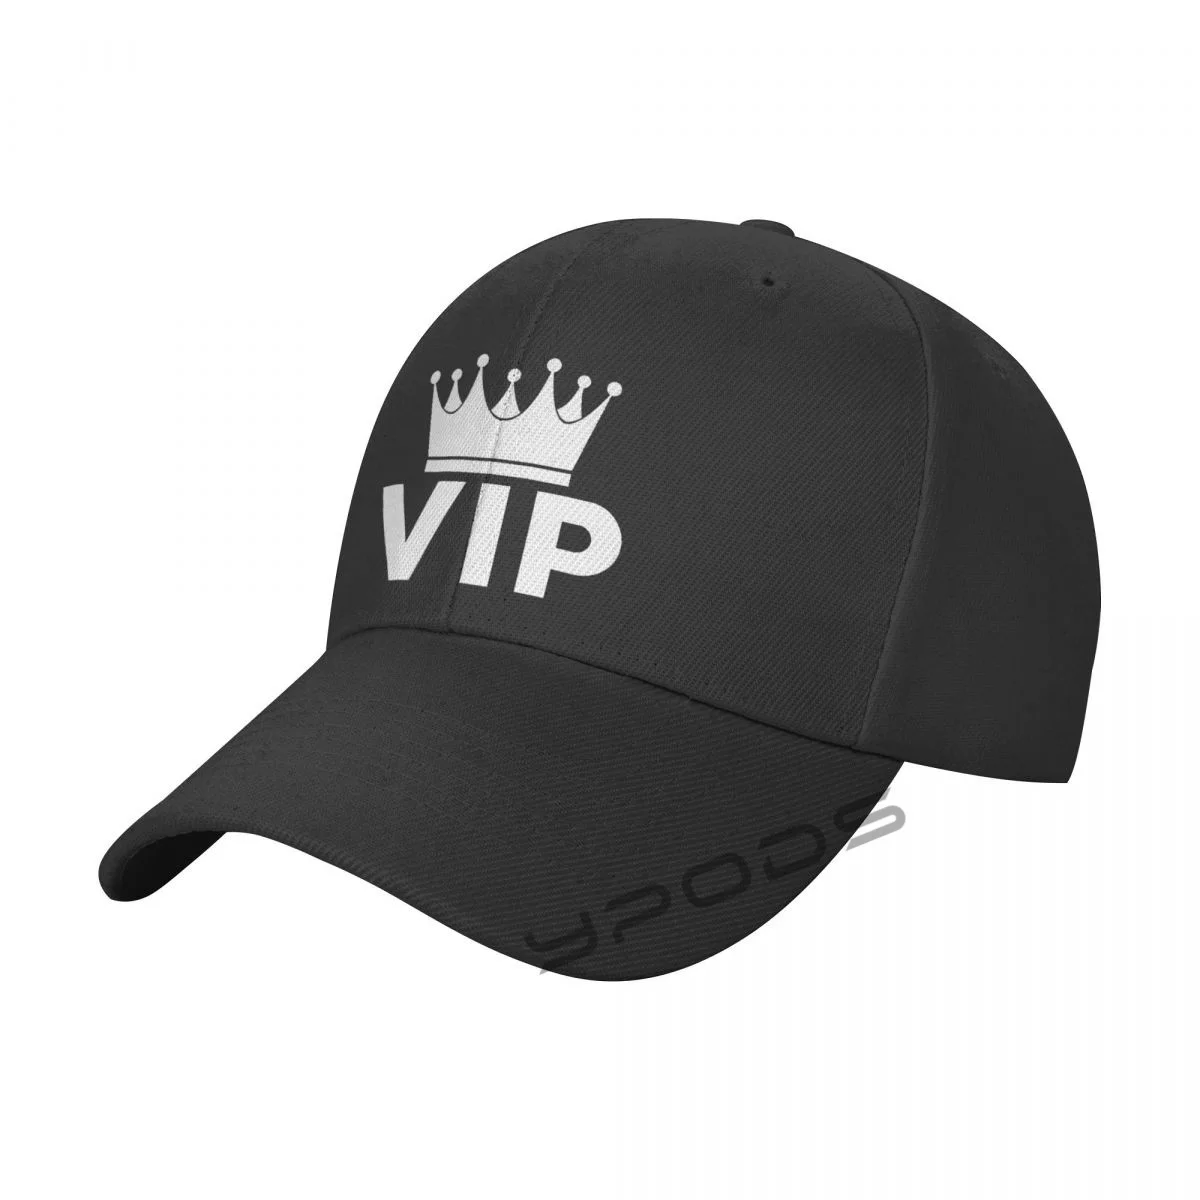 

VIP New Baseball Caps for Men Cap Women Hat Snapback Casual Cap Casquette Hats